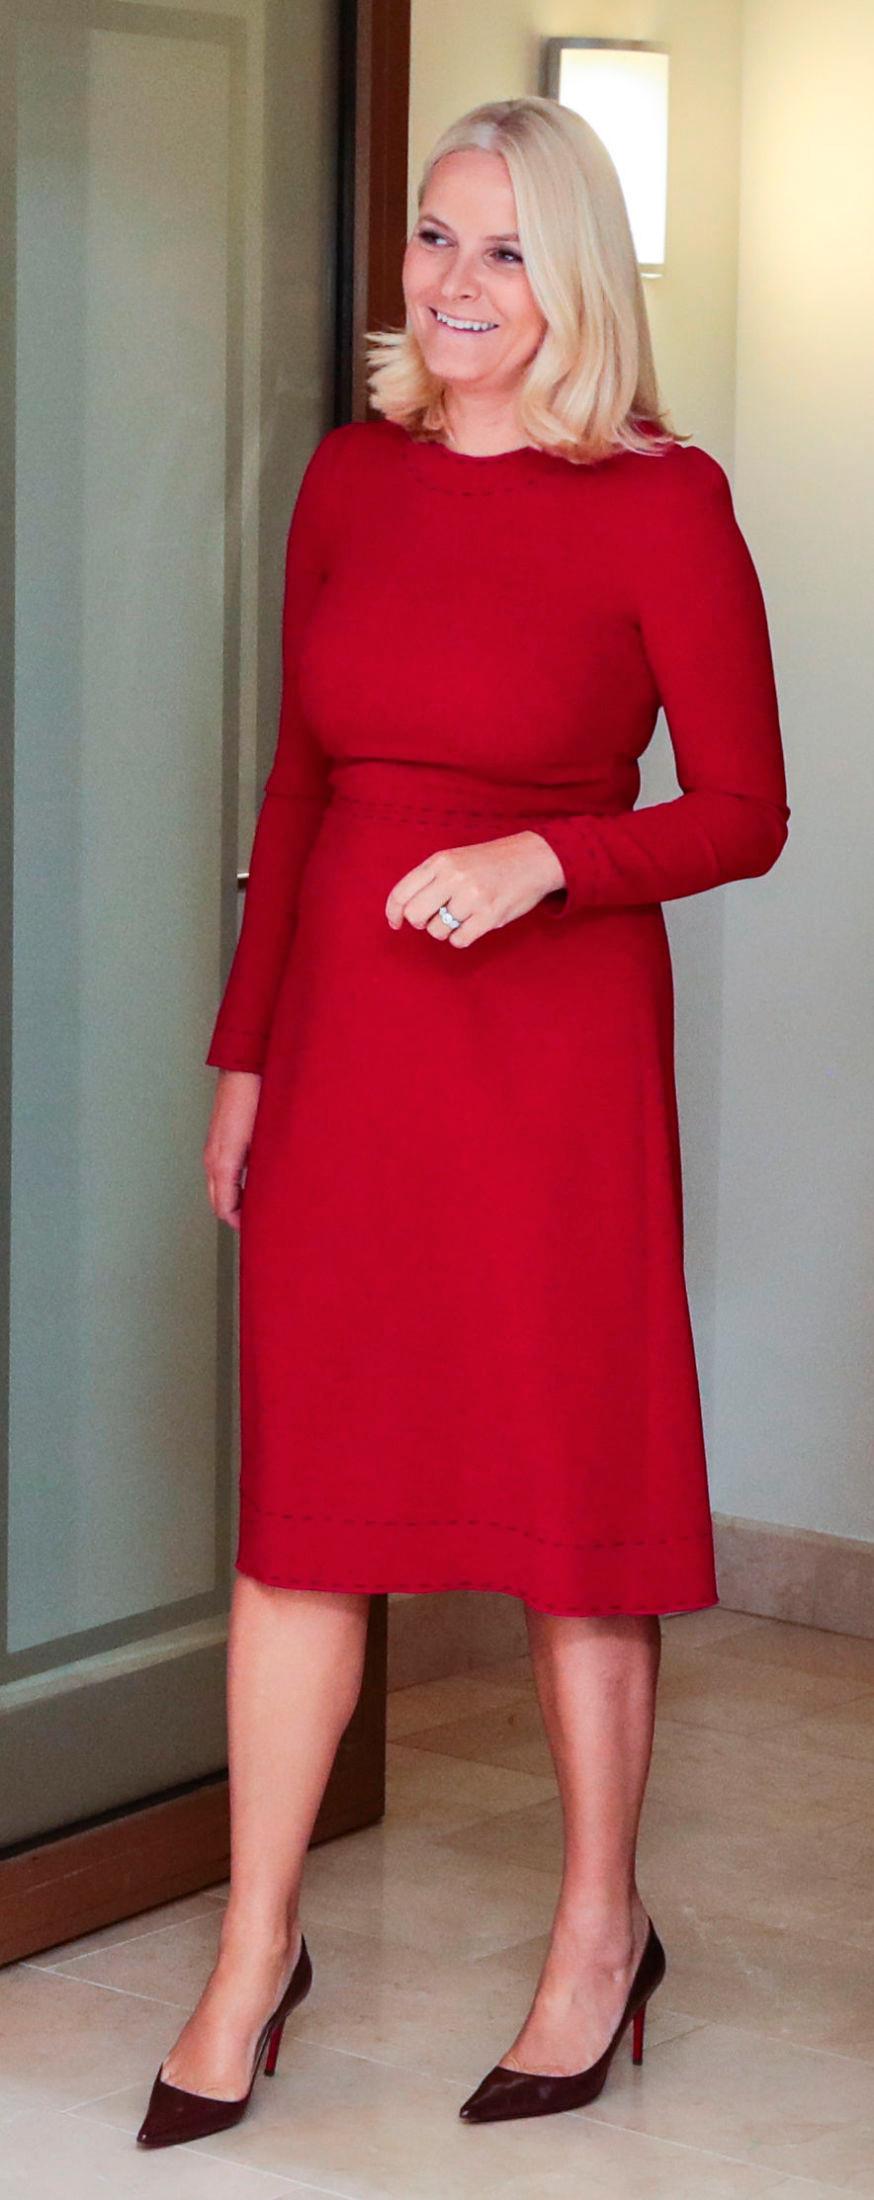 LADY IN RED: Kronprinsesse Mette-Marit kledd i rød kjole og burgunder pumps fra Christian Louboutin i Vilnius. Foto: Lise Åserud/NTB scanpix